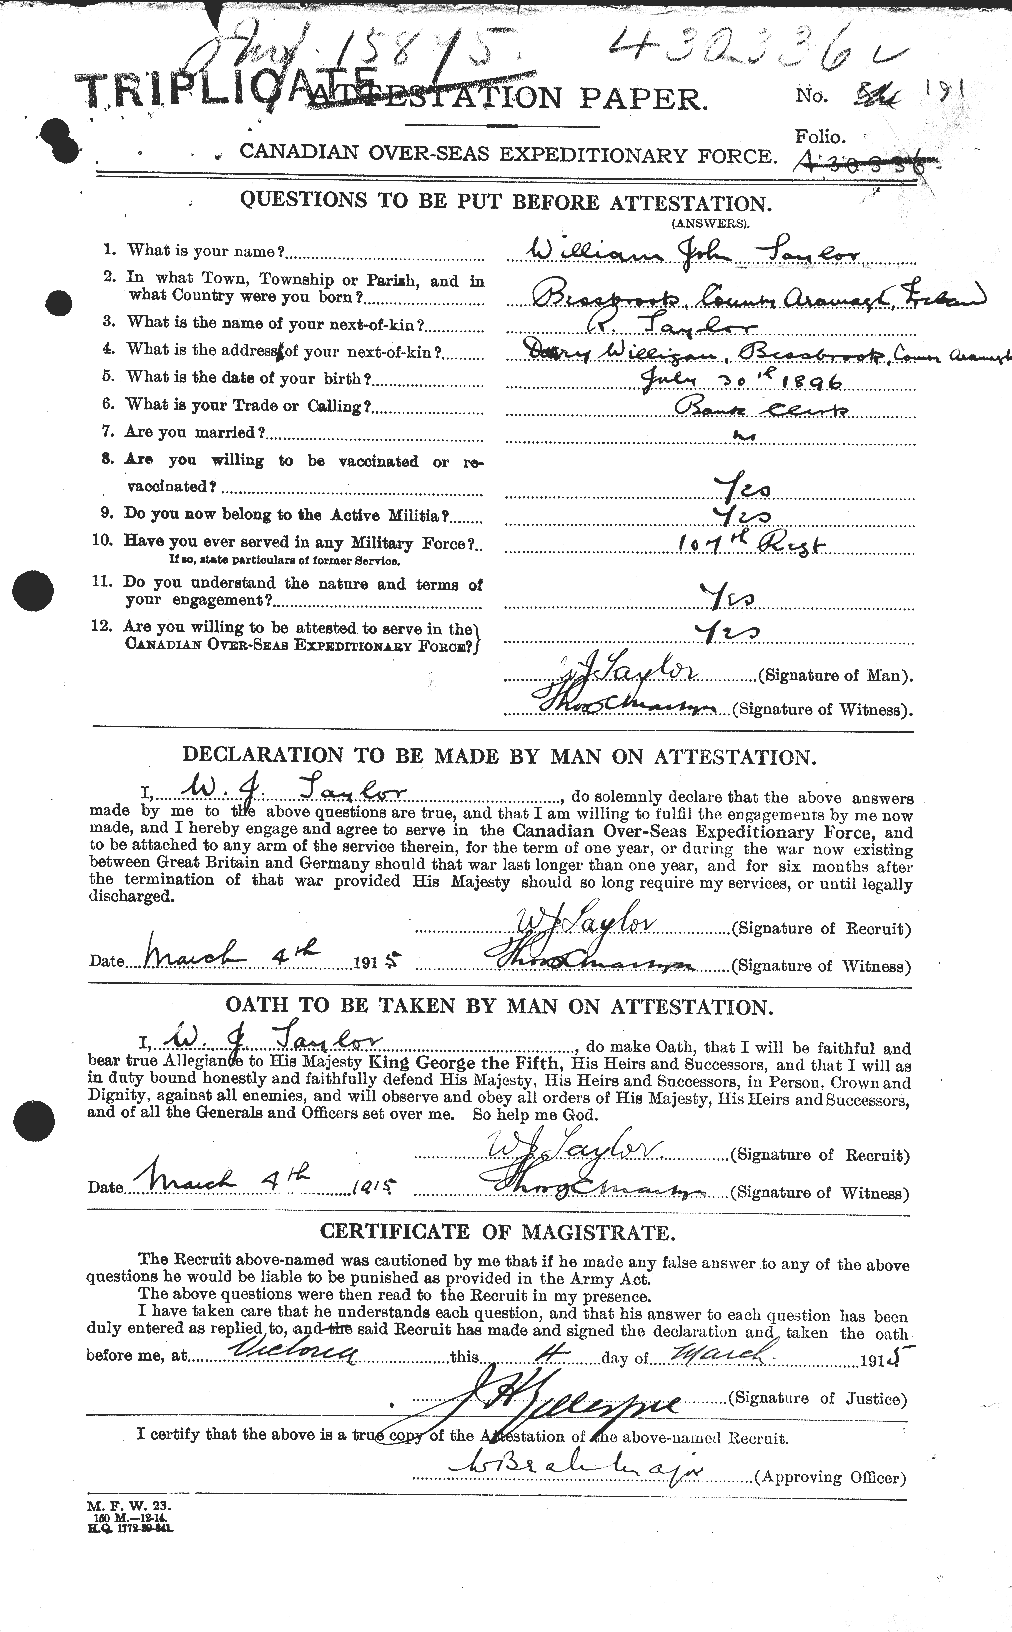 Dossiers du Personnel de la Première Guerre mondiale - CEC 628305a